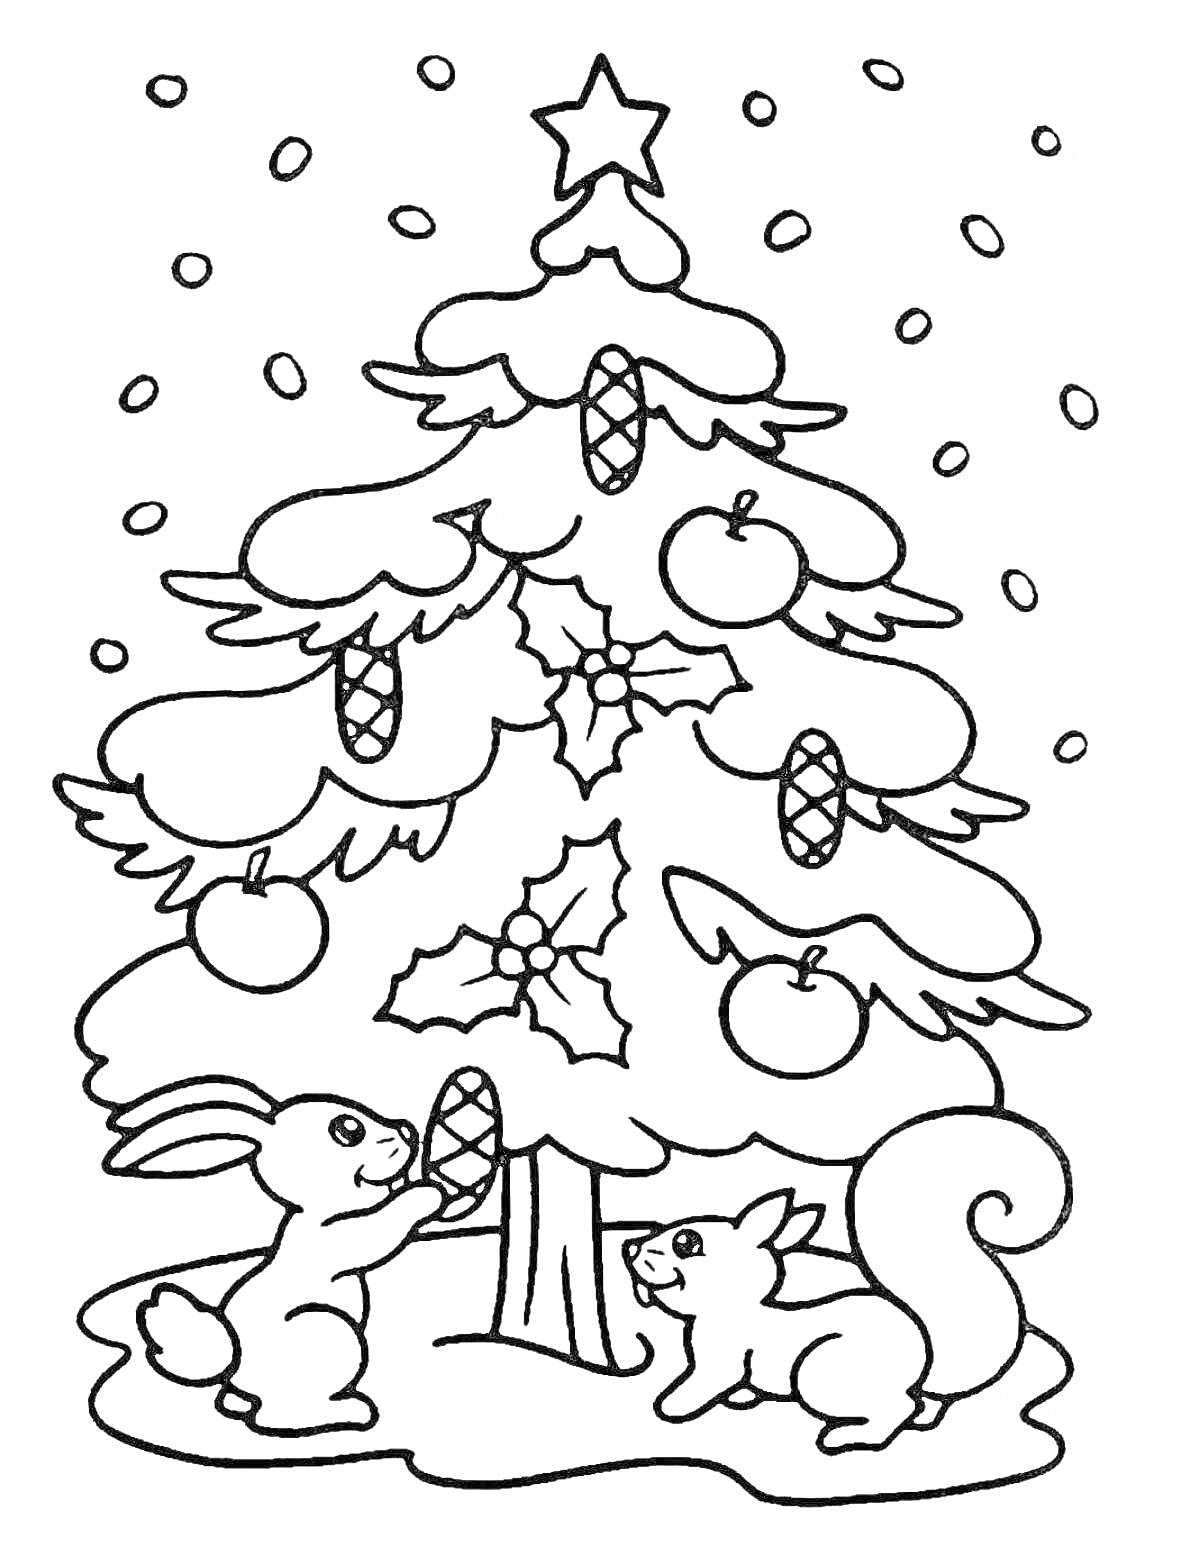 Раскраска Елка, украшенная яблоками и шишками, с кроликом и белкой у основания, на фоне падающего снега